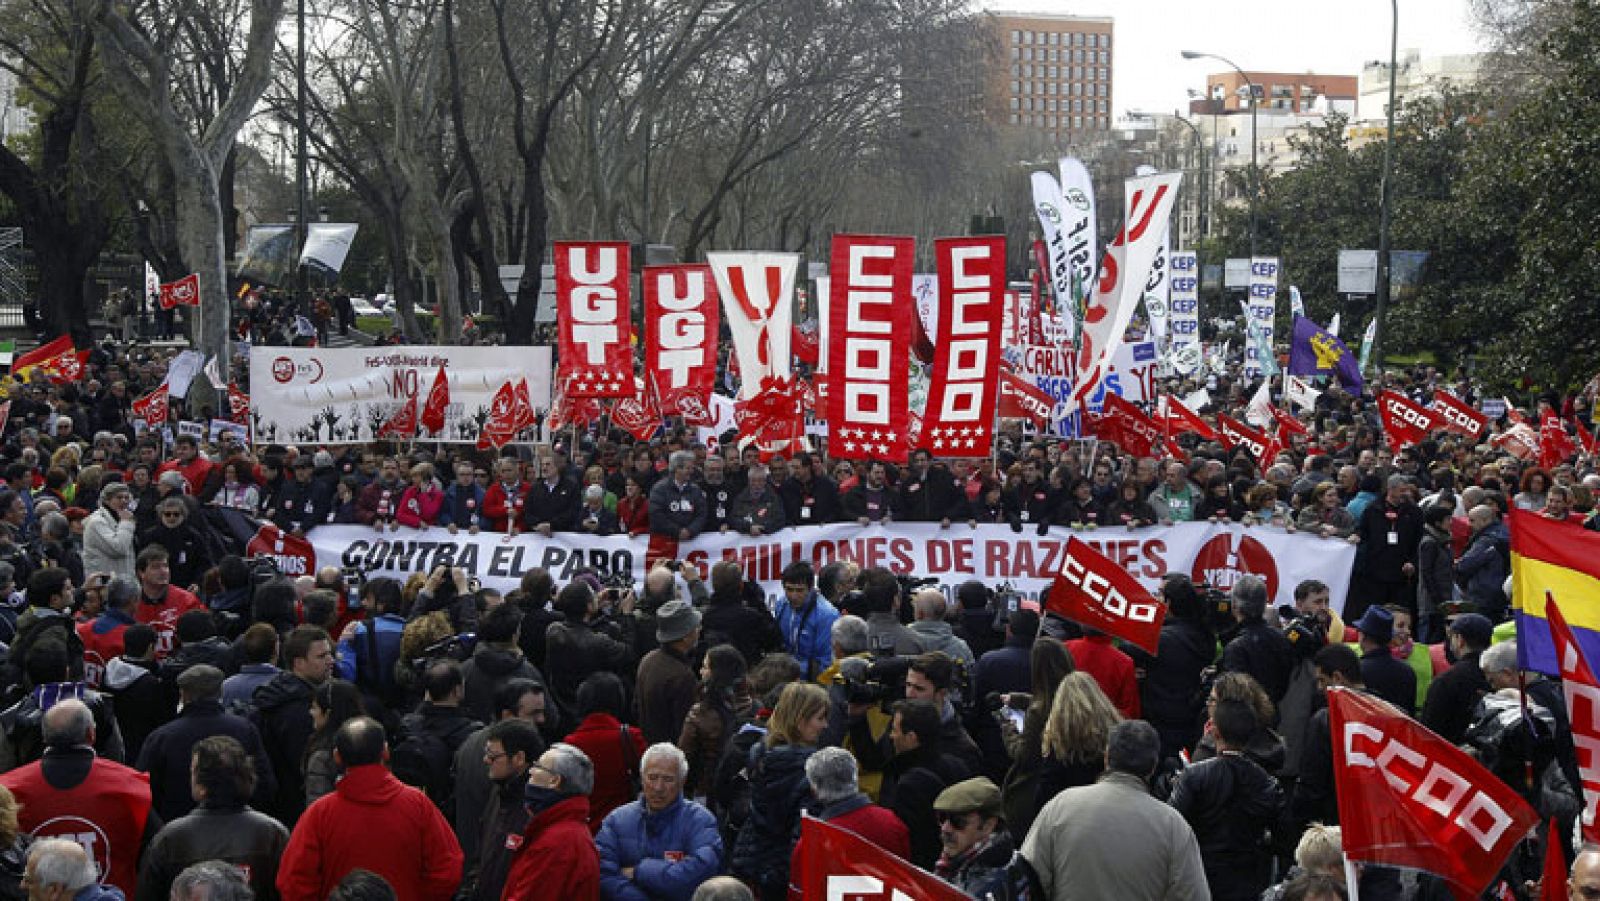  Miles de personas se han manifestado hoy en 64 ciudades españolas contra el paro y por la regeneración democrática, convocadas por la Cumbre Social. En Madrid, la marcha ha estado encabezada por los líderes sindicales, que han insistido en su rechazo a las políticas de austeridad.